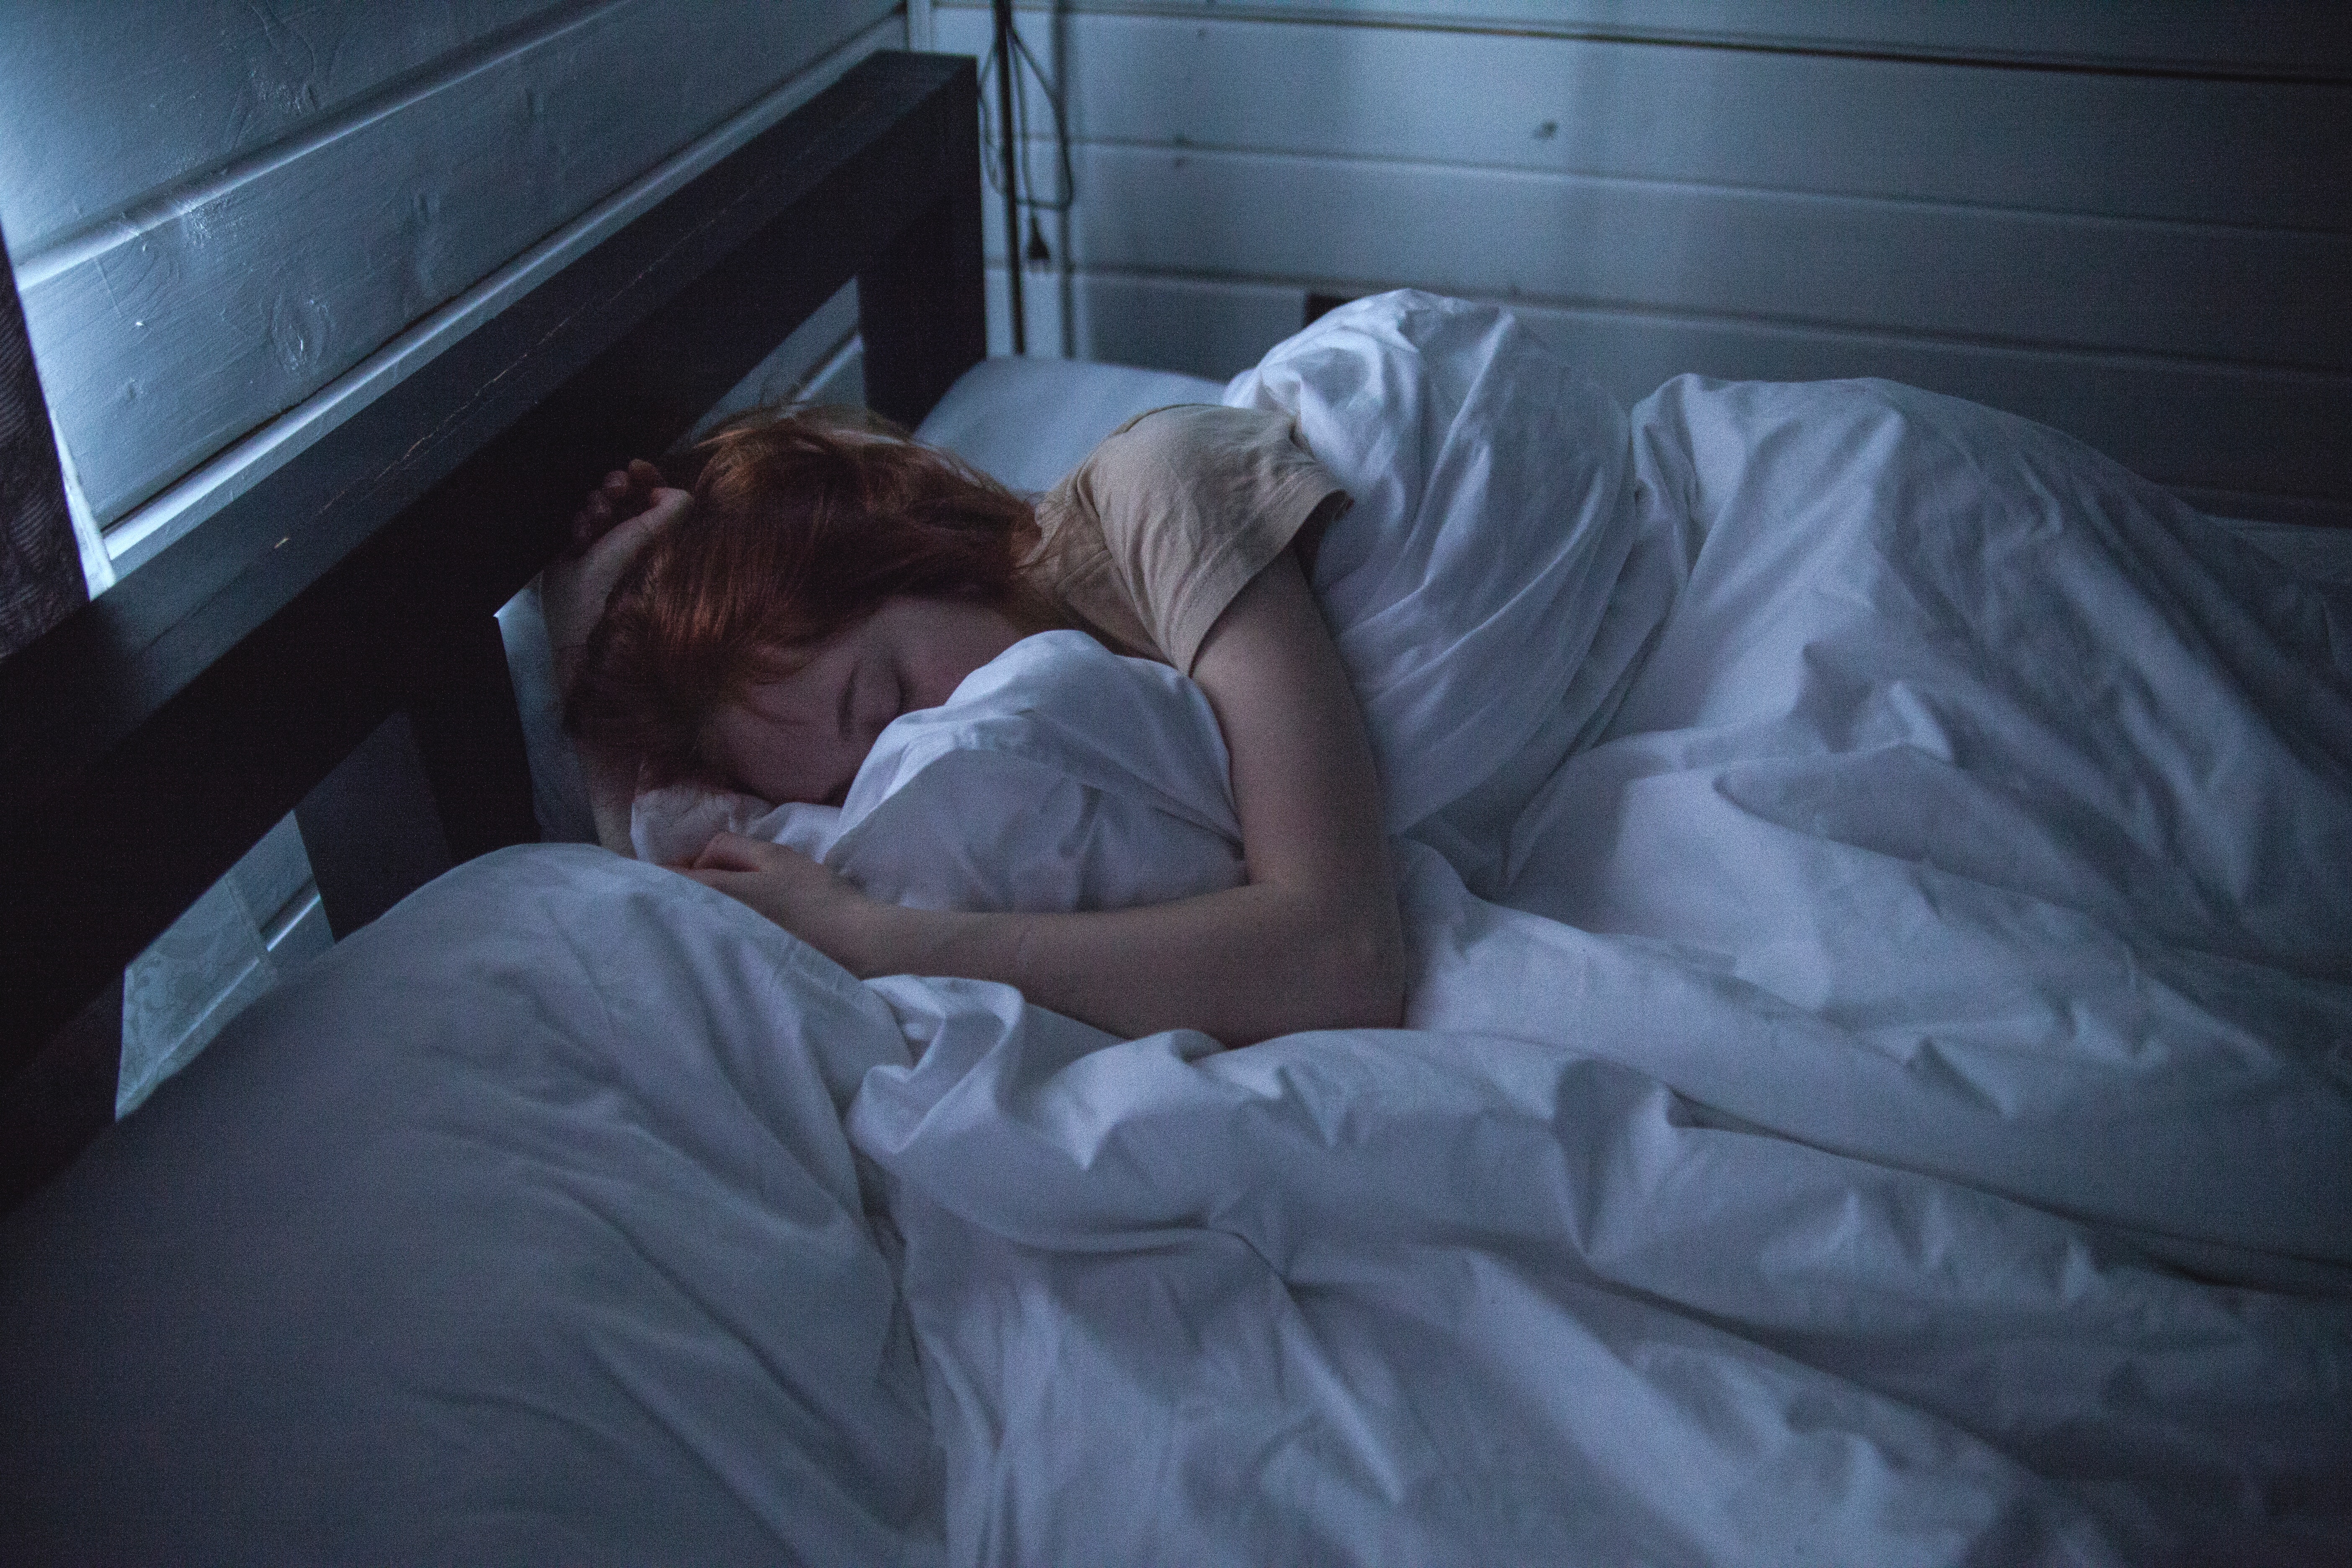 Har min søvn indflydelse på omfanget af karsprængninger?